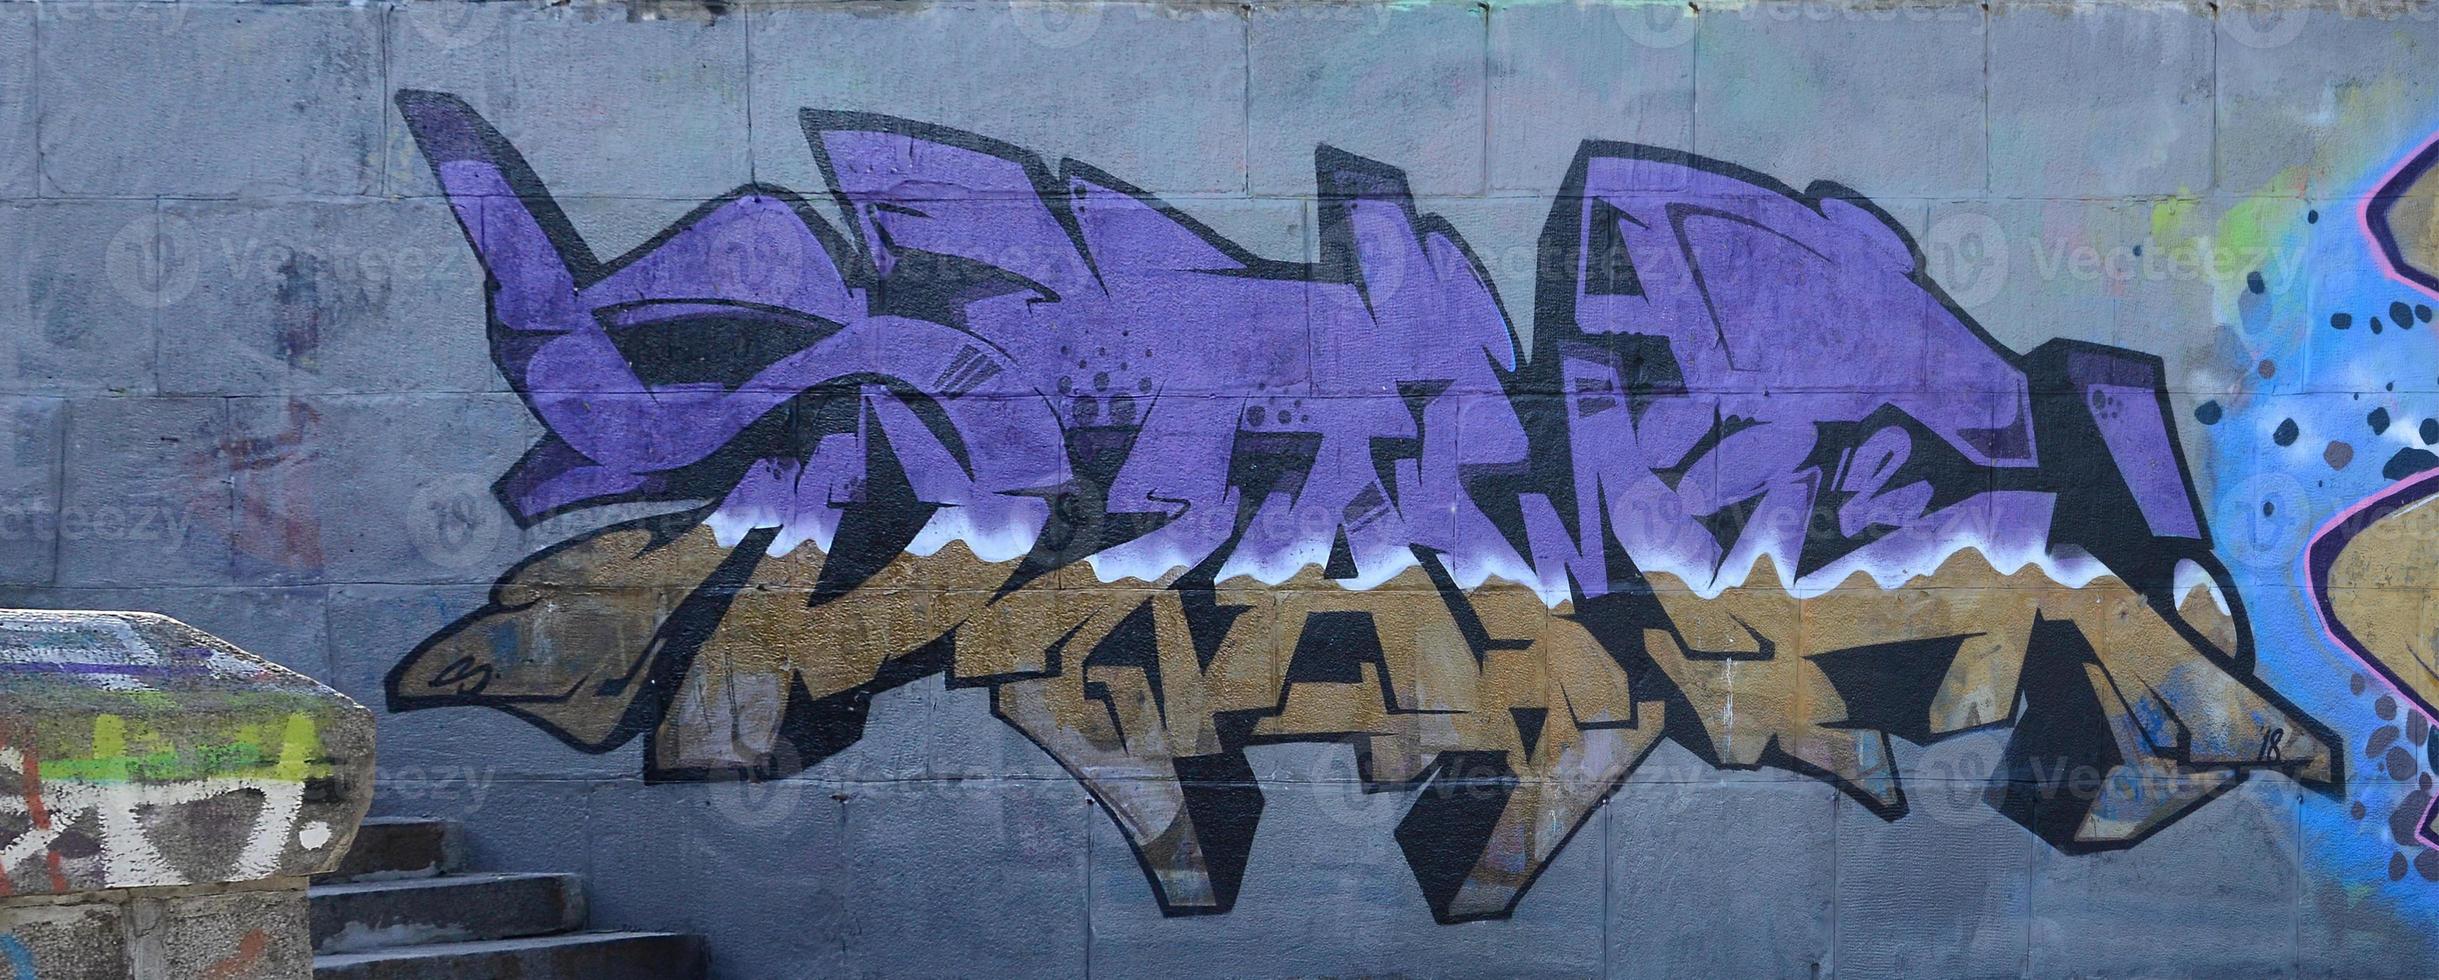 fragmento de desenhos de grafite. a parede antiga decorada com manchas de tinta no estilo da cultura da arte de rua. textura de fundo colorido em tons de roxo foto